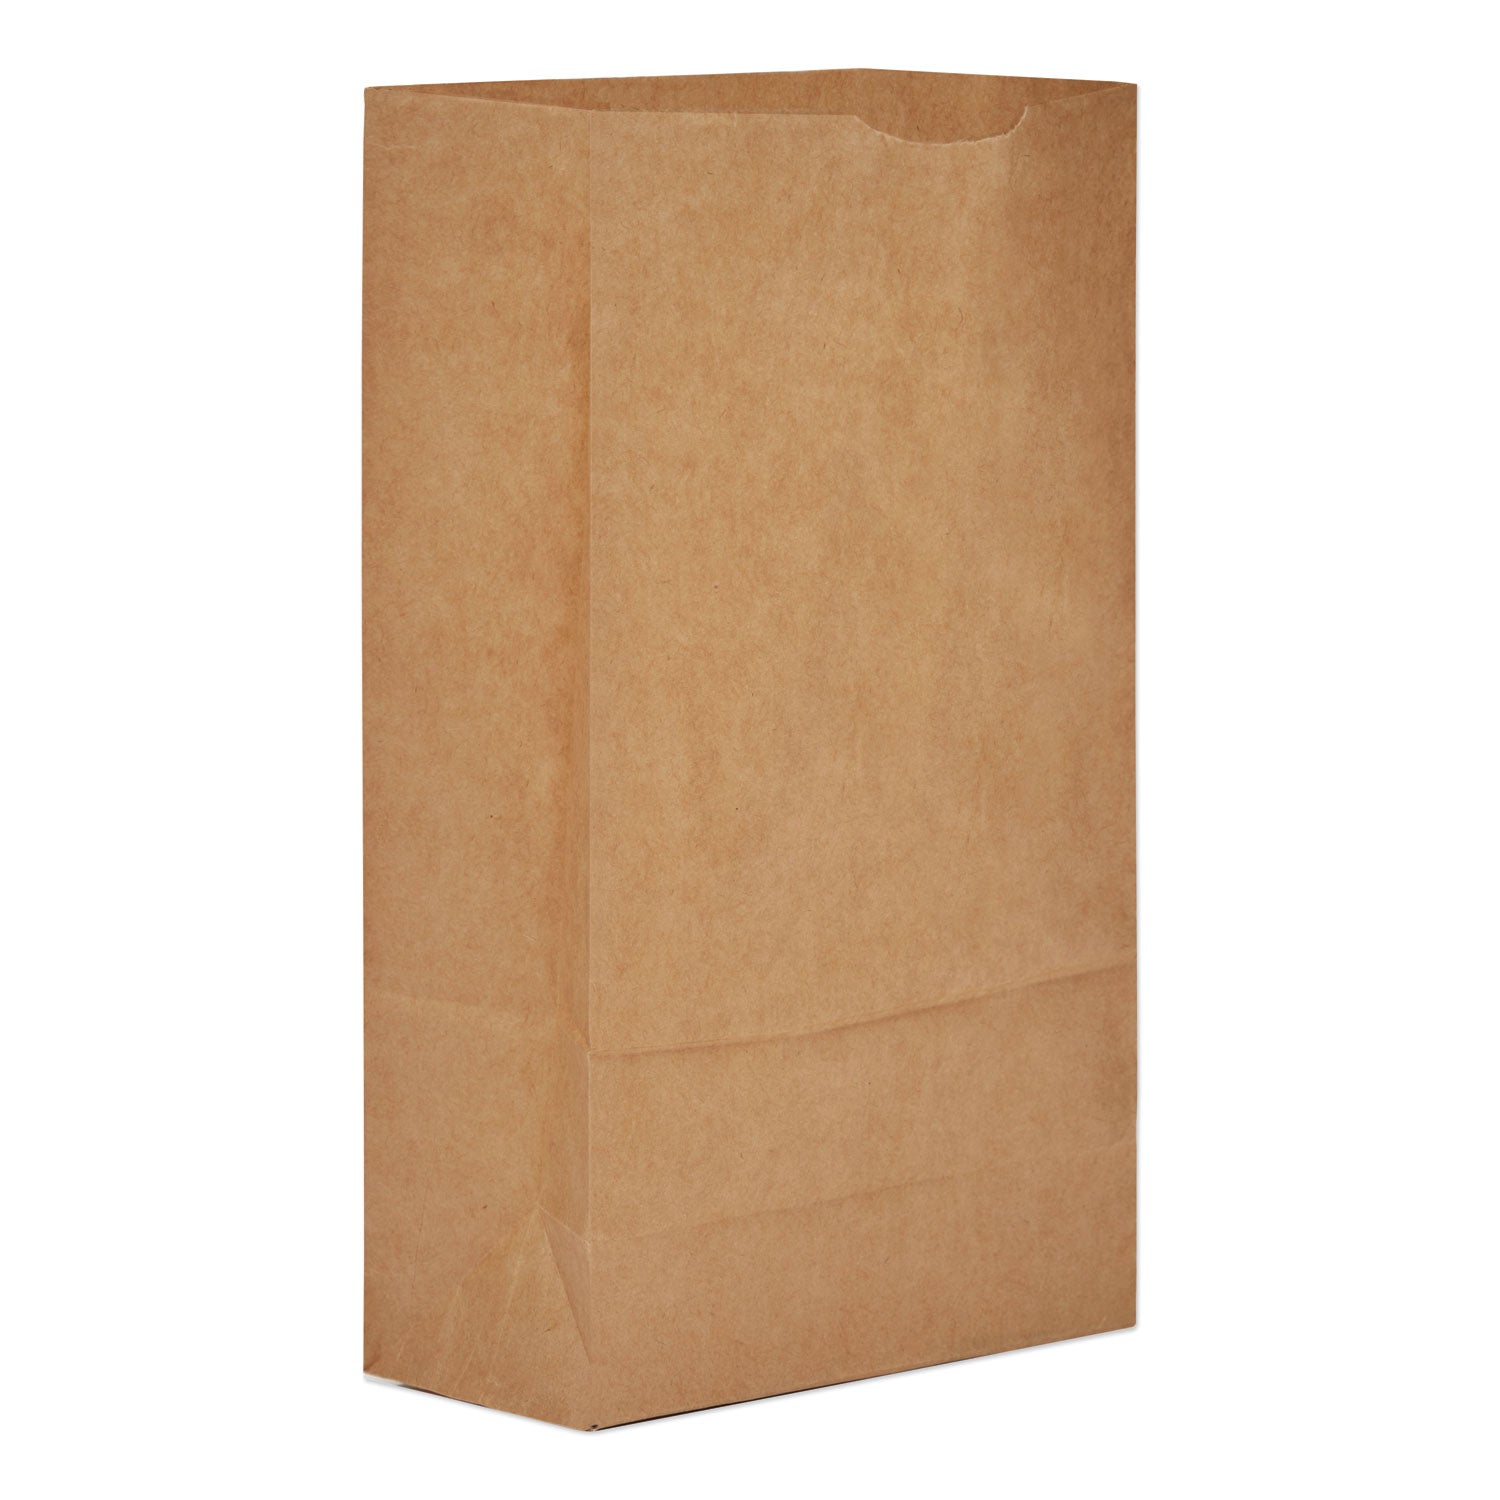 grocery-paper-bags-35-lb-capacity-#6-6-x-363-x-1106-kraft-2000-bags_baggk6 - 1